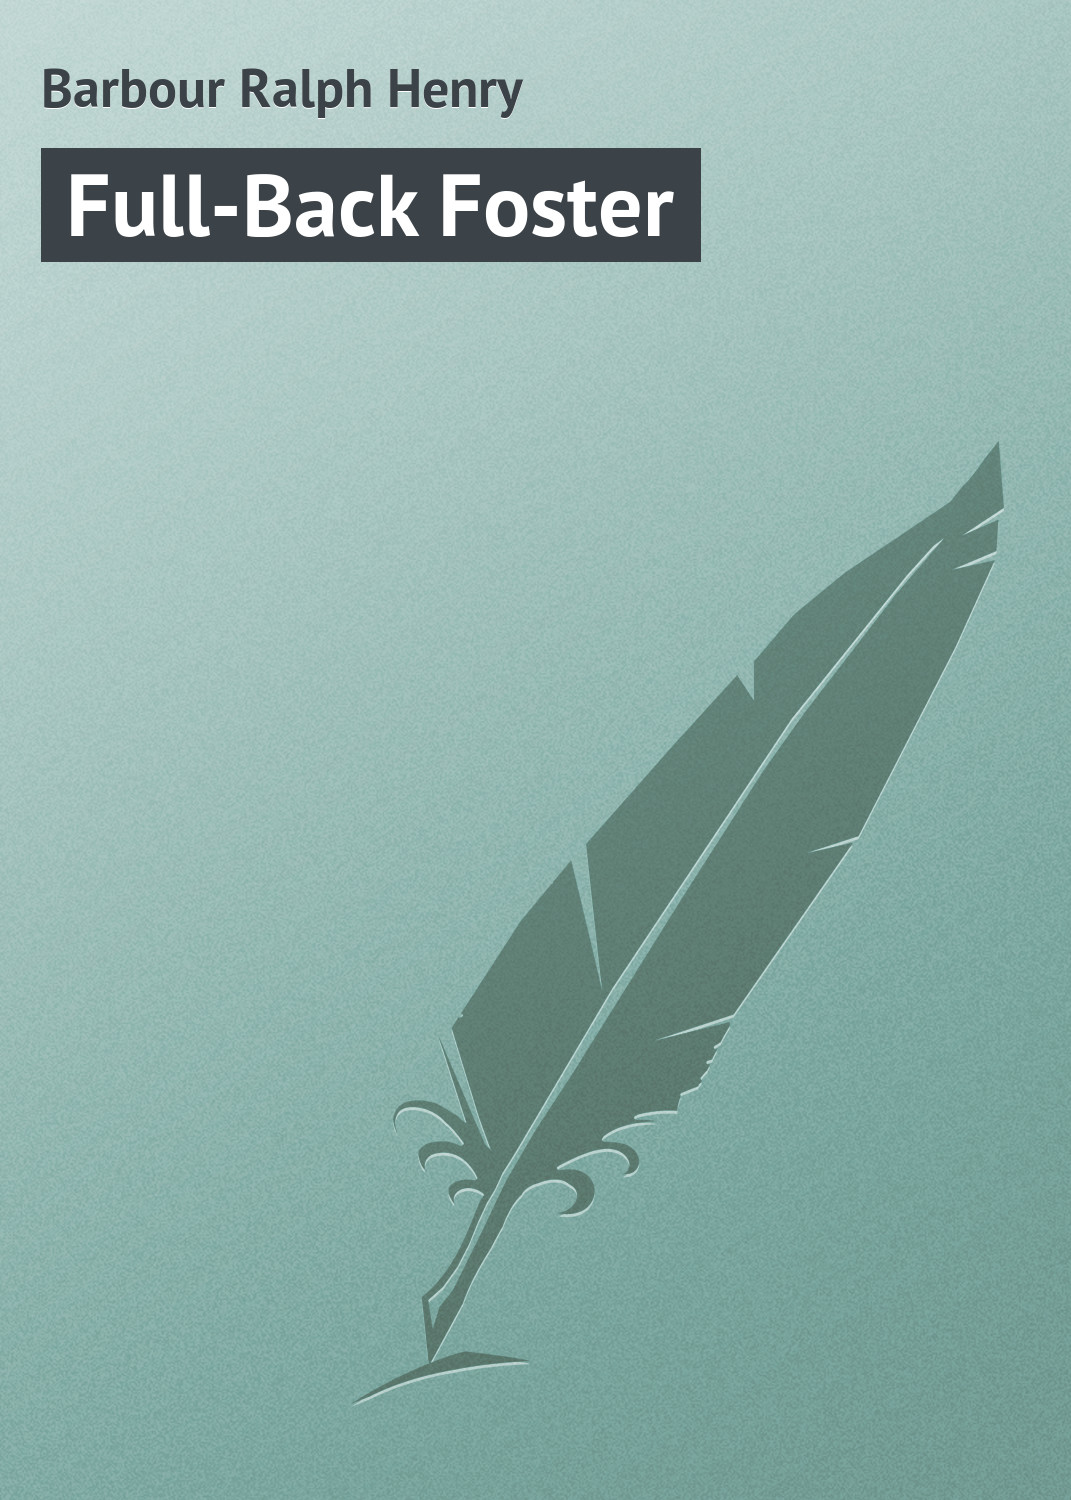 Книга Full-Back Foster из серии , созданная Ralph Barbour, может относится к жанру Зарубежная классика, Зарубежные детские книги. Стоимость электронной книги Full-Back Foster с идентификатором 23157707 составляет 5.99 руб.